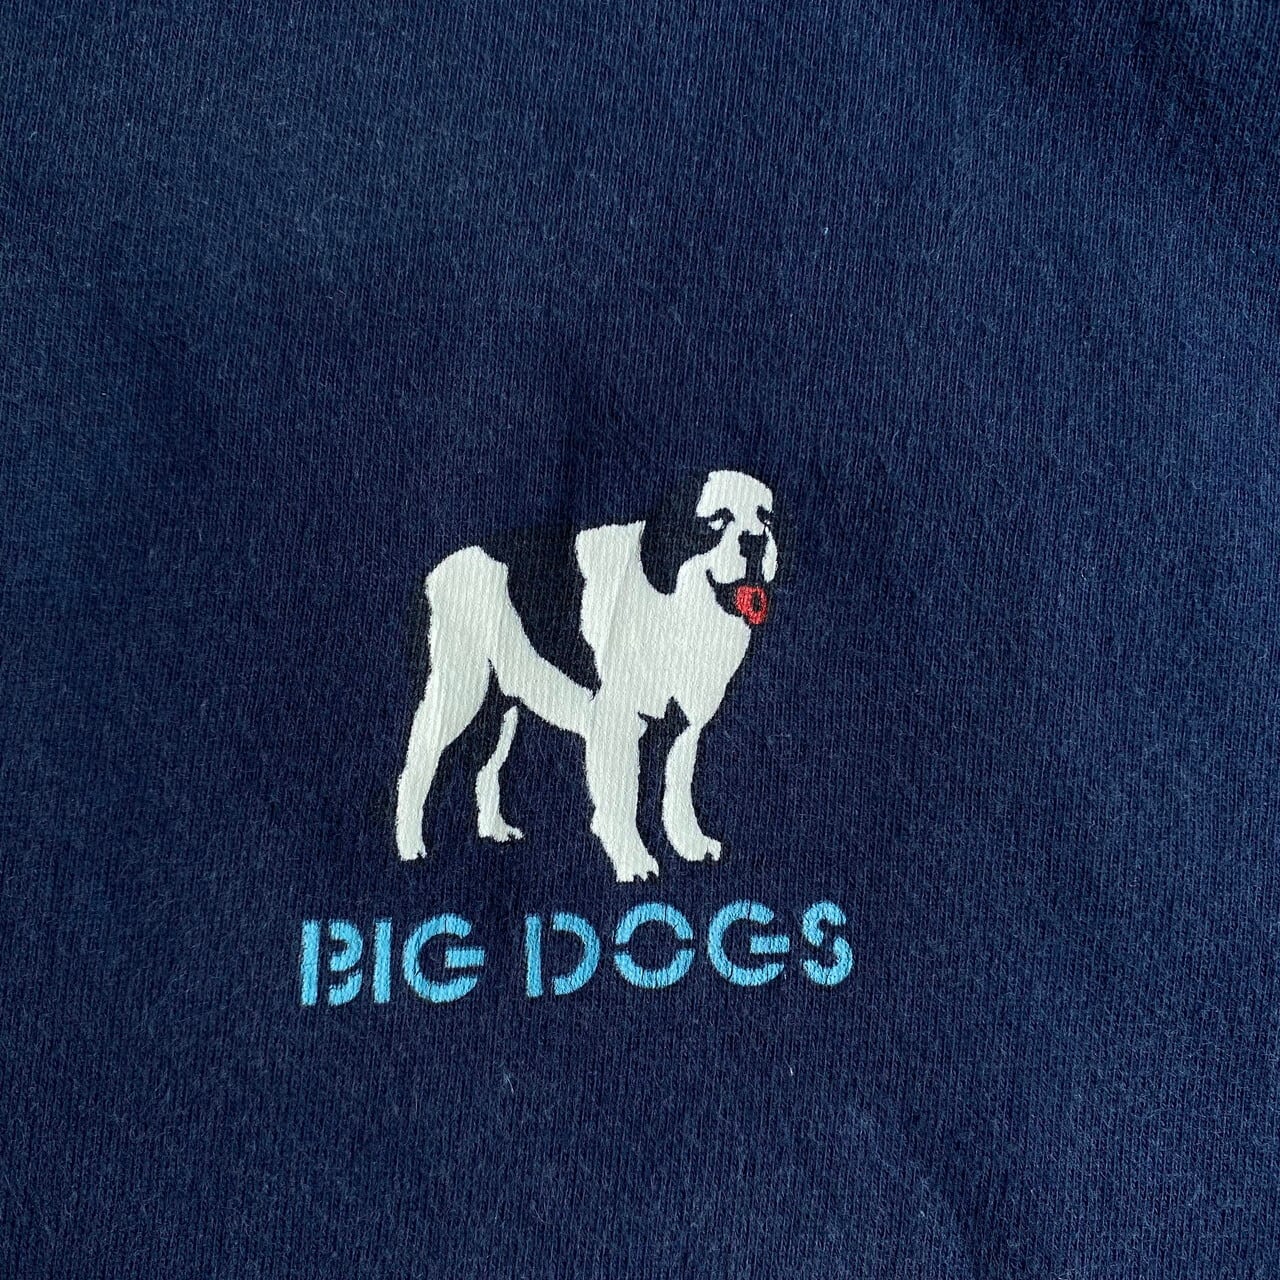 ビッグ ドッグス 犬 アニマル 総柄 超ビッグサイズ！5XL シャツ USA